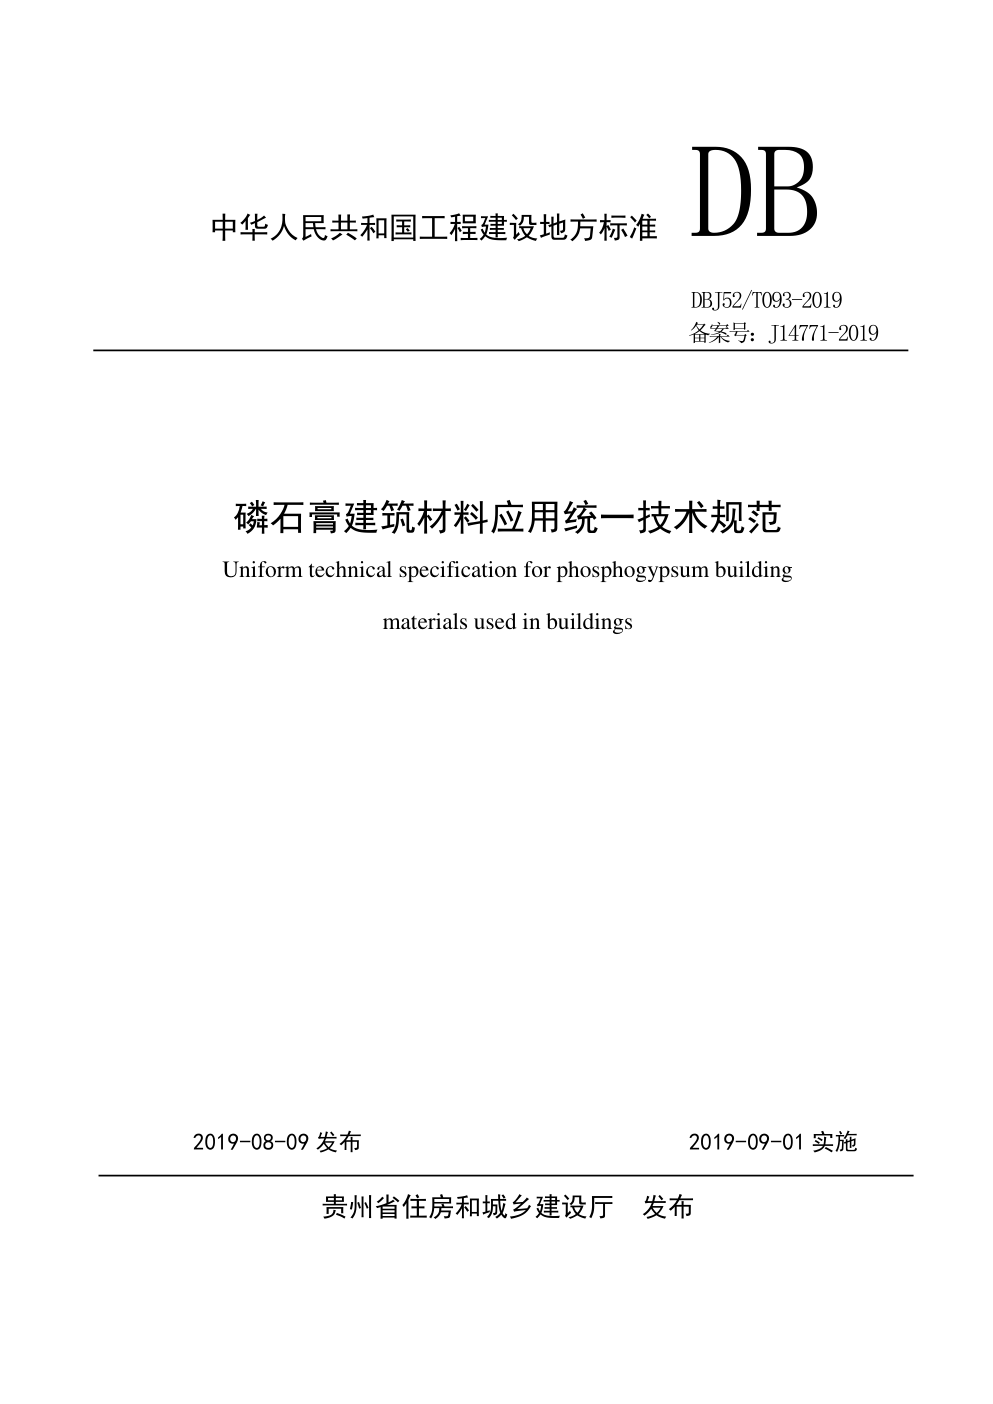 DBJ52 T093-2019 贵州 磷石膏建筑材料应用统一技术规范-0